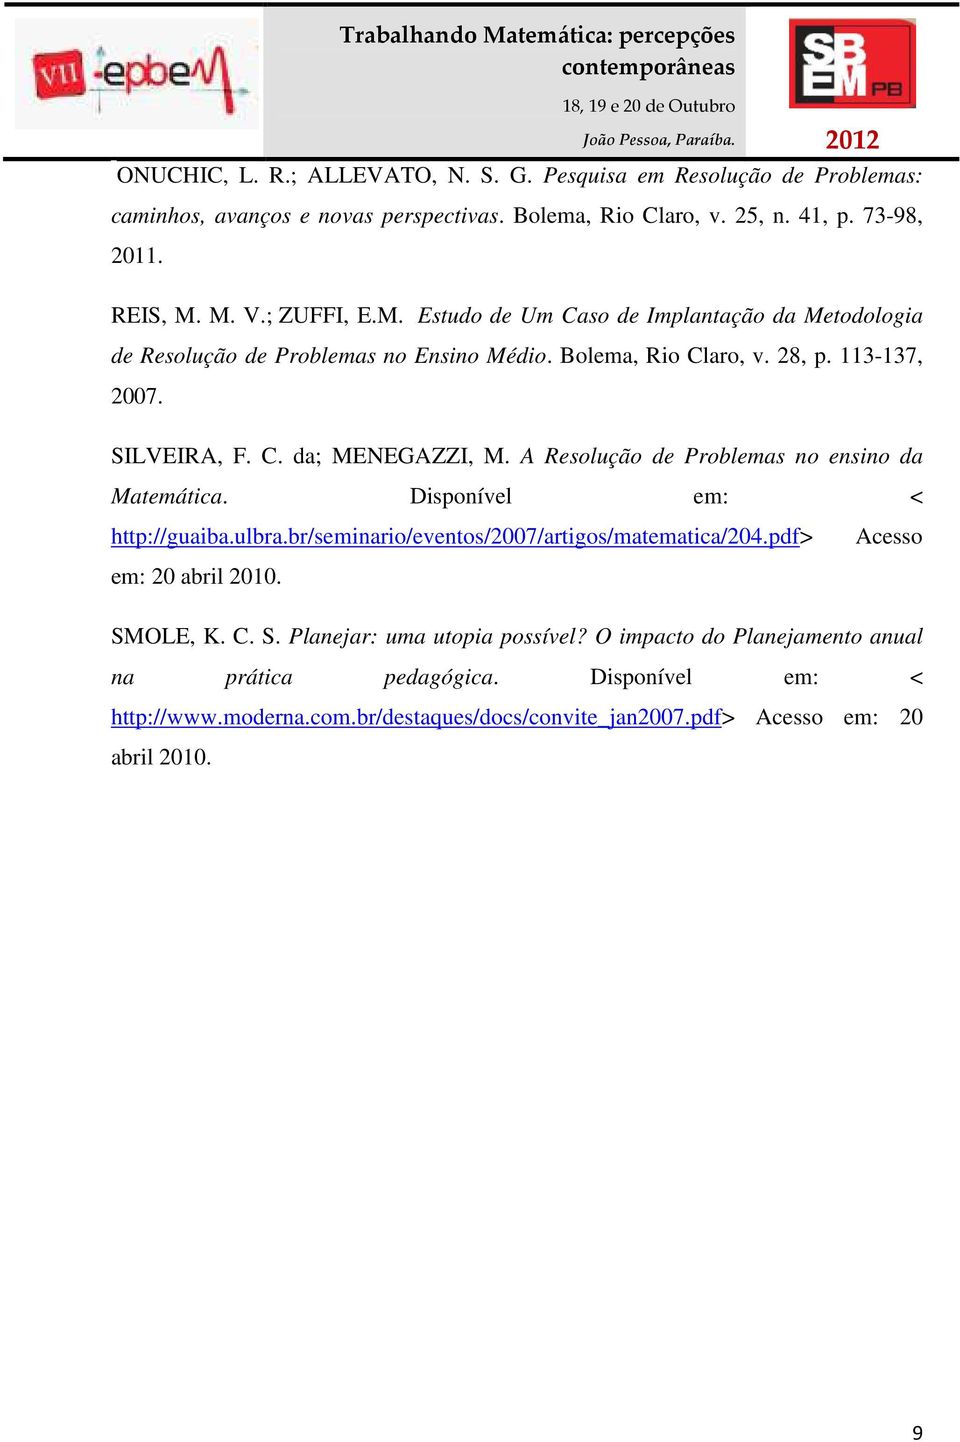 A Resolução de Problemas no ensino da Matemática. Disponível em: < http://guaiba.ulbra.br/seminario/eventos/2007/artigos/matematica/204.pdf> Acesso em: 20 abril 2010. SM